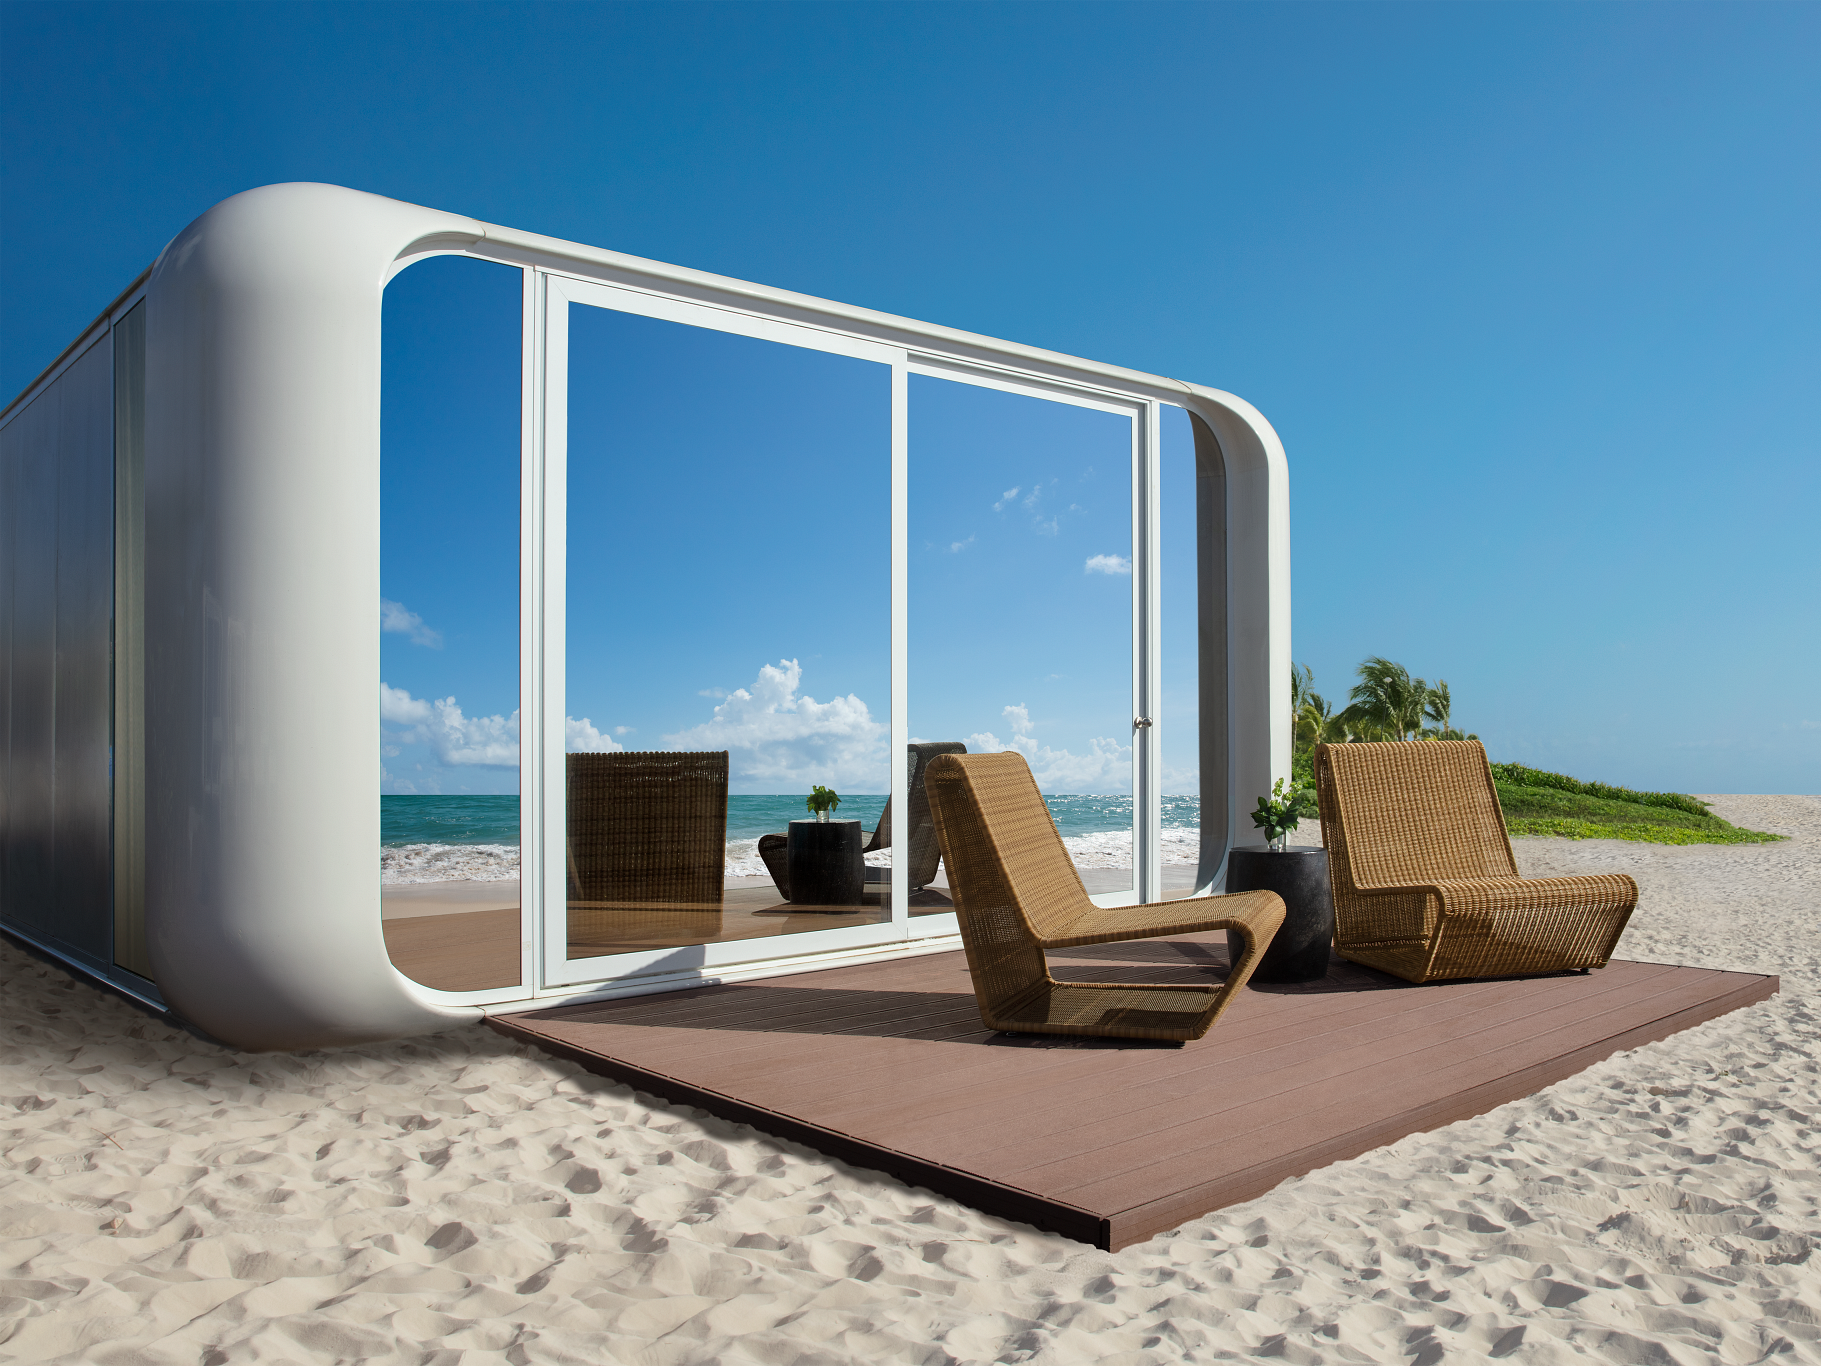 hyatt will in einem all-inclusive-resort in der karibik modulare tiny houses als hotelzimmer nutzen – so sollen sie aussehen